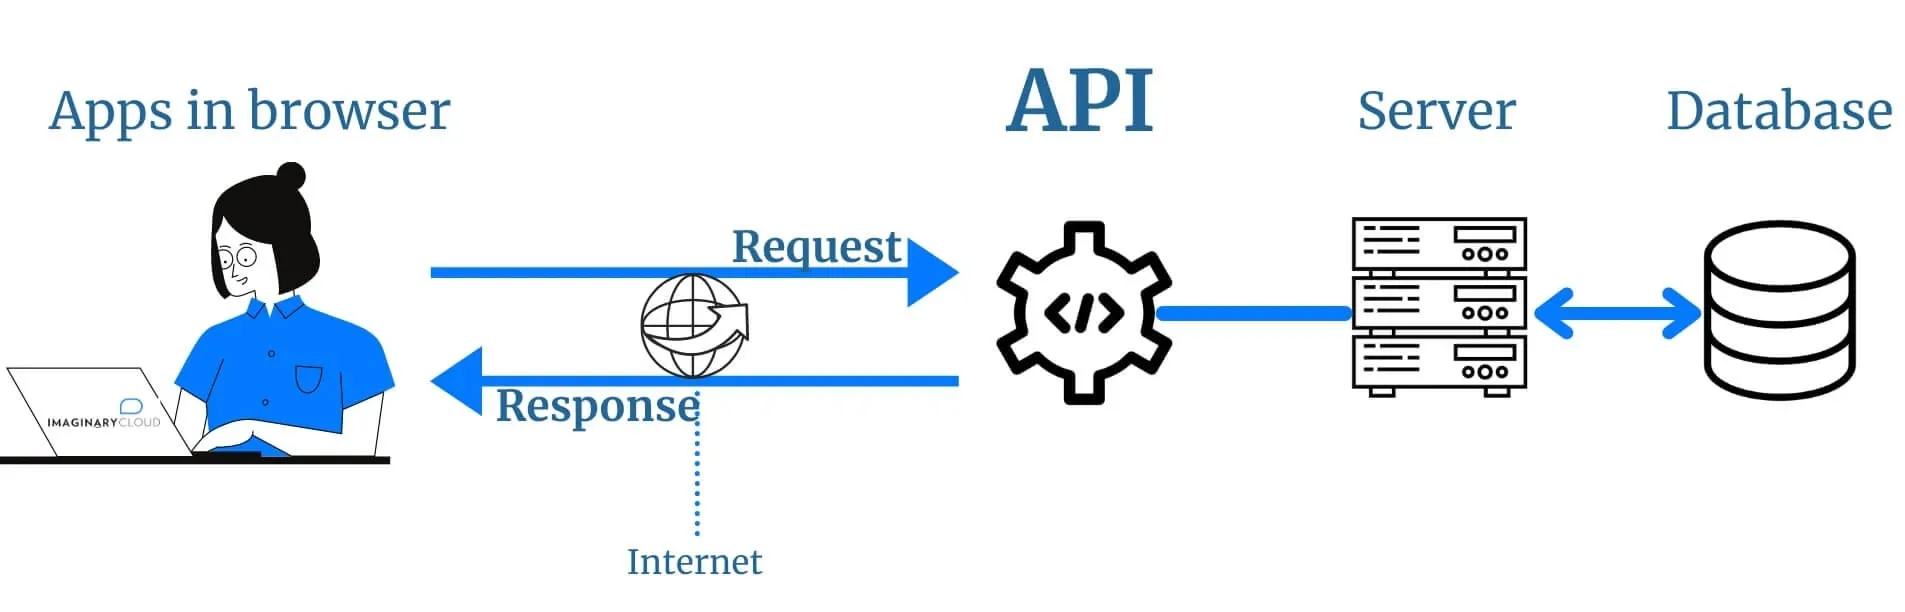 How APIs work